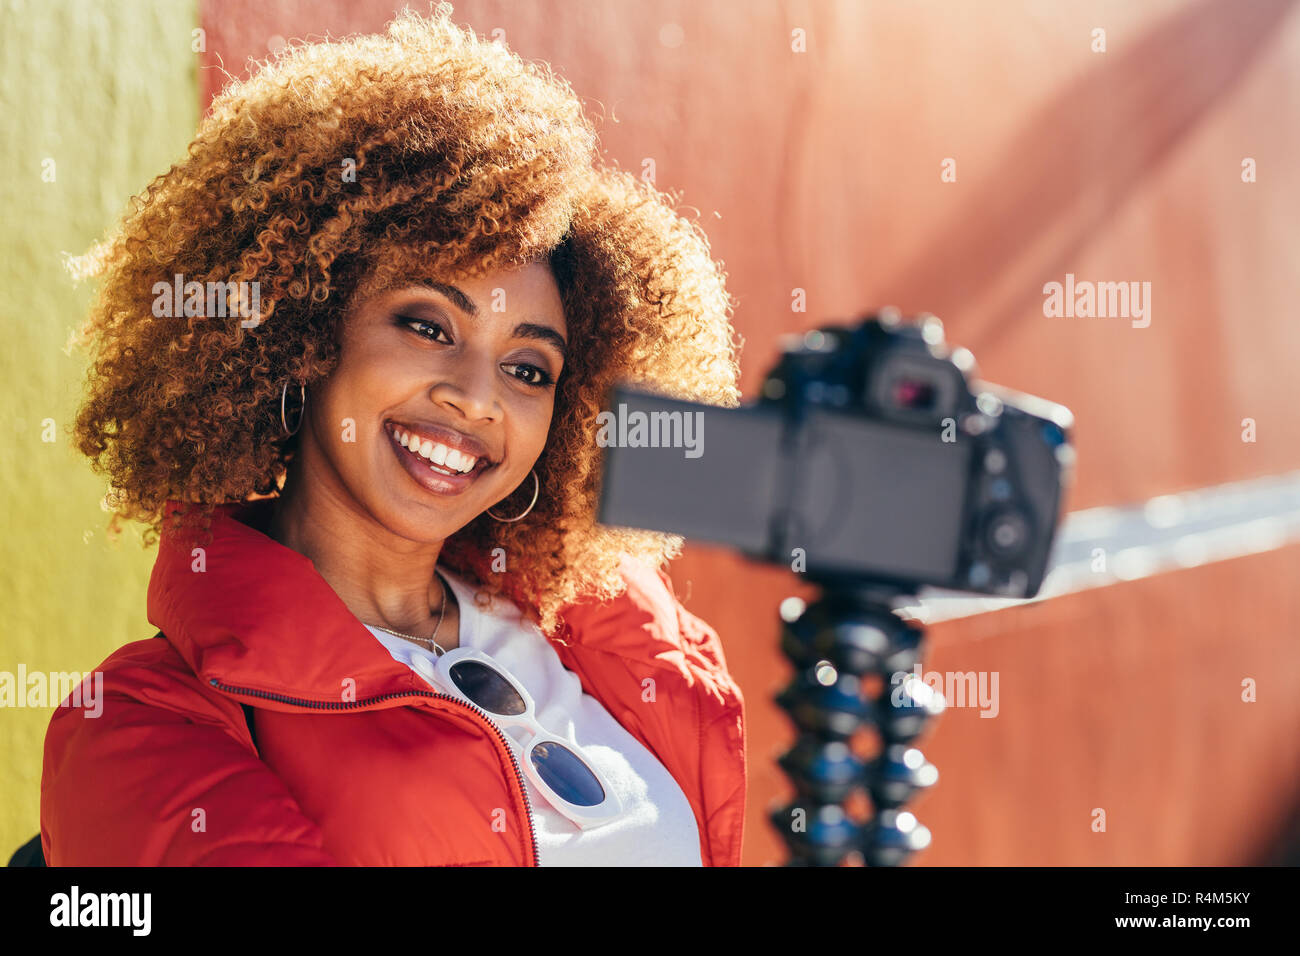 Femme gaie enregistrement de contenu pour son blog de voyage à l'extérieur. Portrait d'une femme touriste prenant un air avec un selfies photo reflex numérique. Banque D'Images